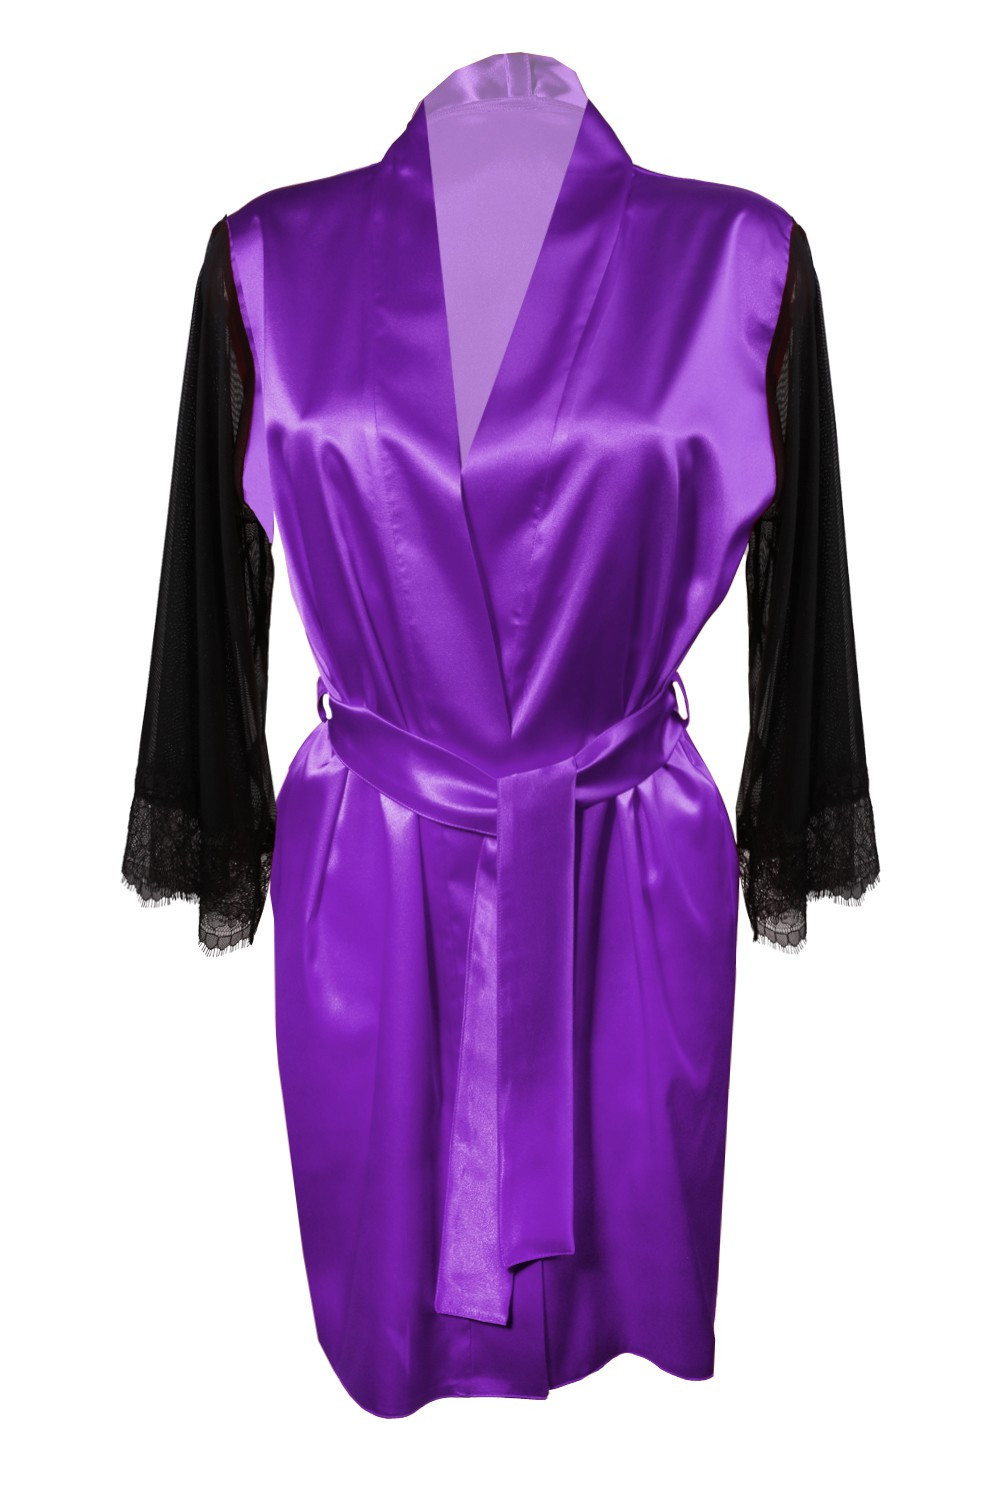 Housecoat model 18227303 Violet XL Violet - DKaren